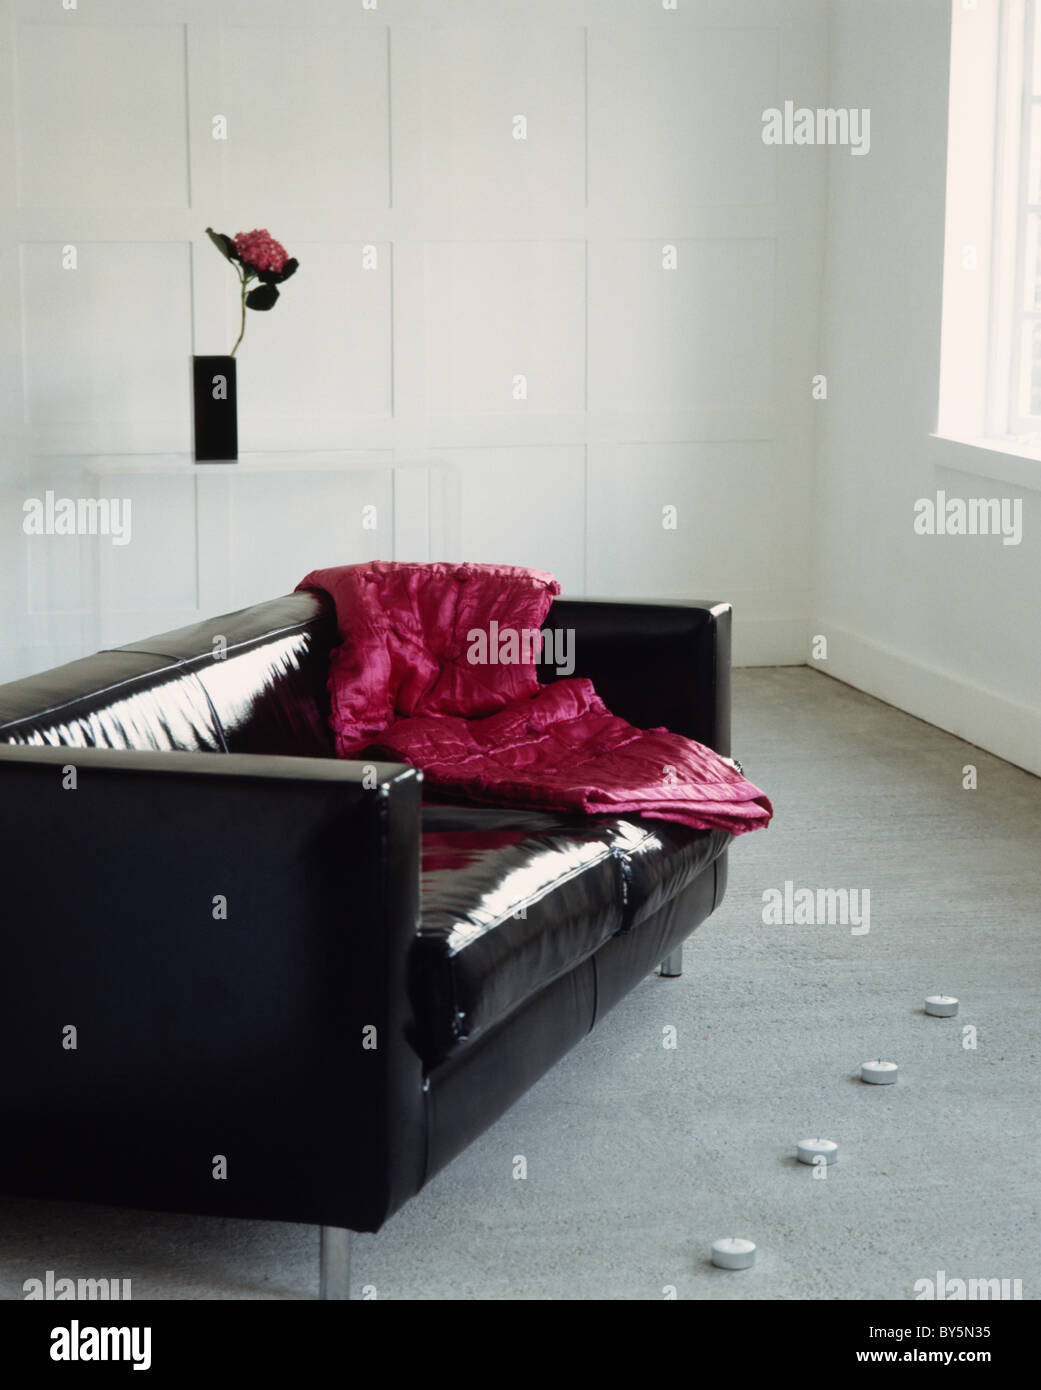 Crimson velvet throw on shiny black leather sofa in modern city living room Stock Photo